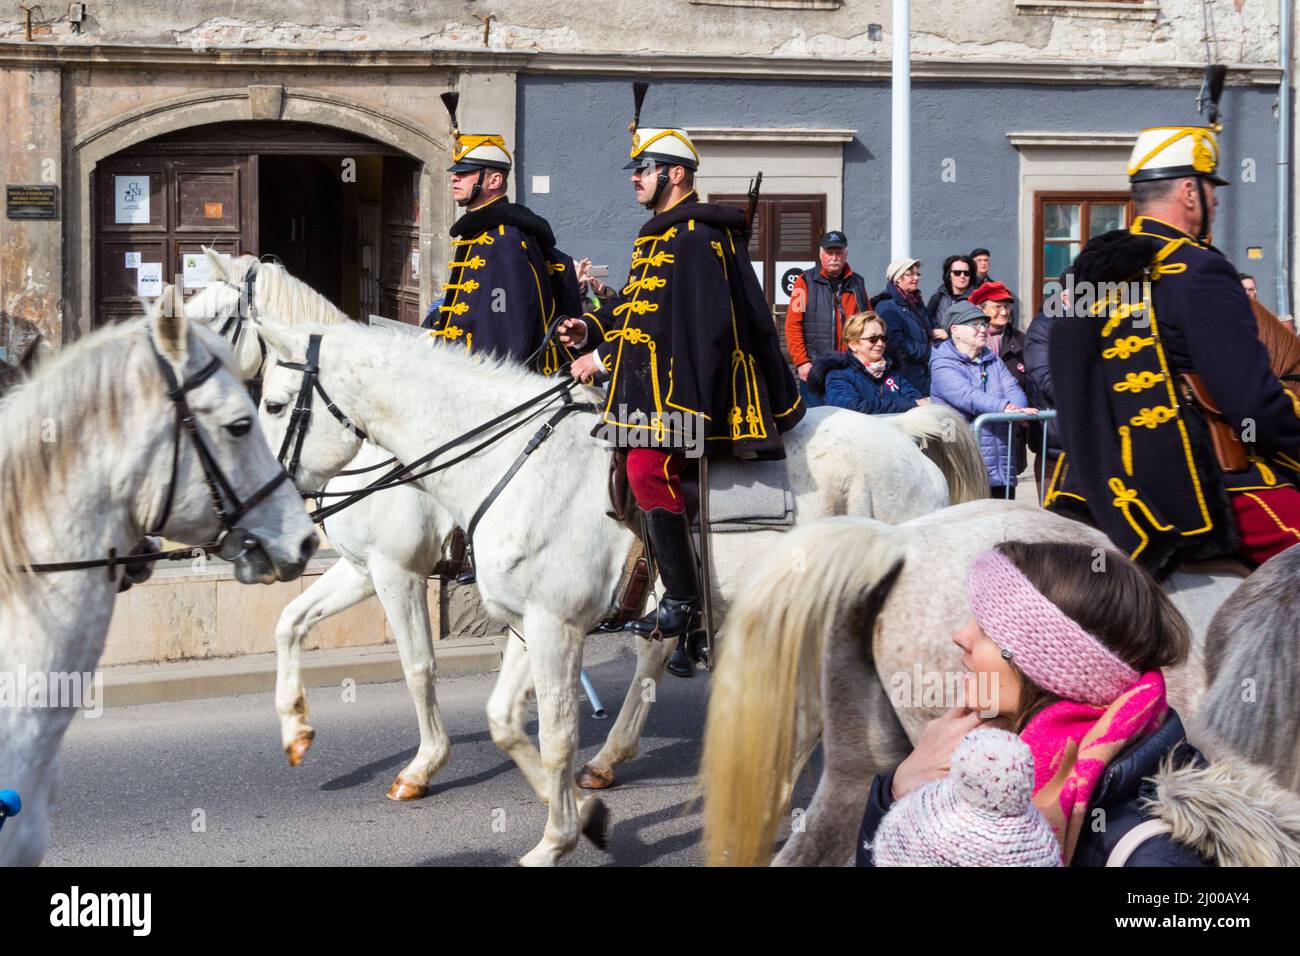 Feier der ungarischen Revolution von 1848 in Petofi ter, Sopron, Ungarn, März 15 2022. Ungarische Hussaren reiten auf Pferden Stockfoto